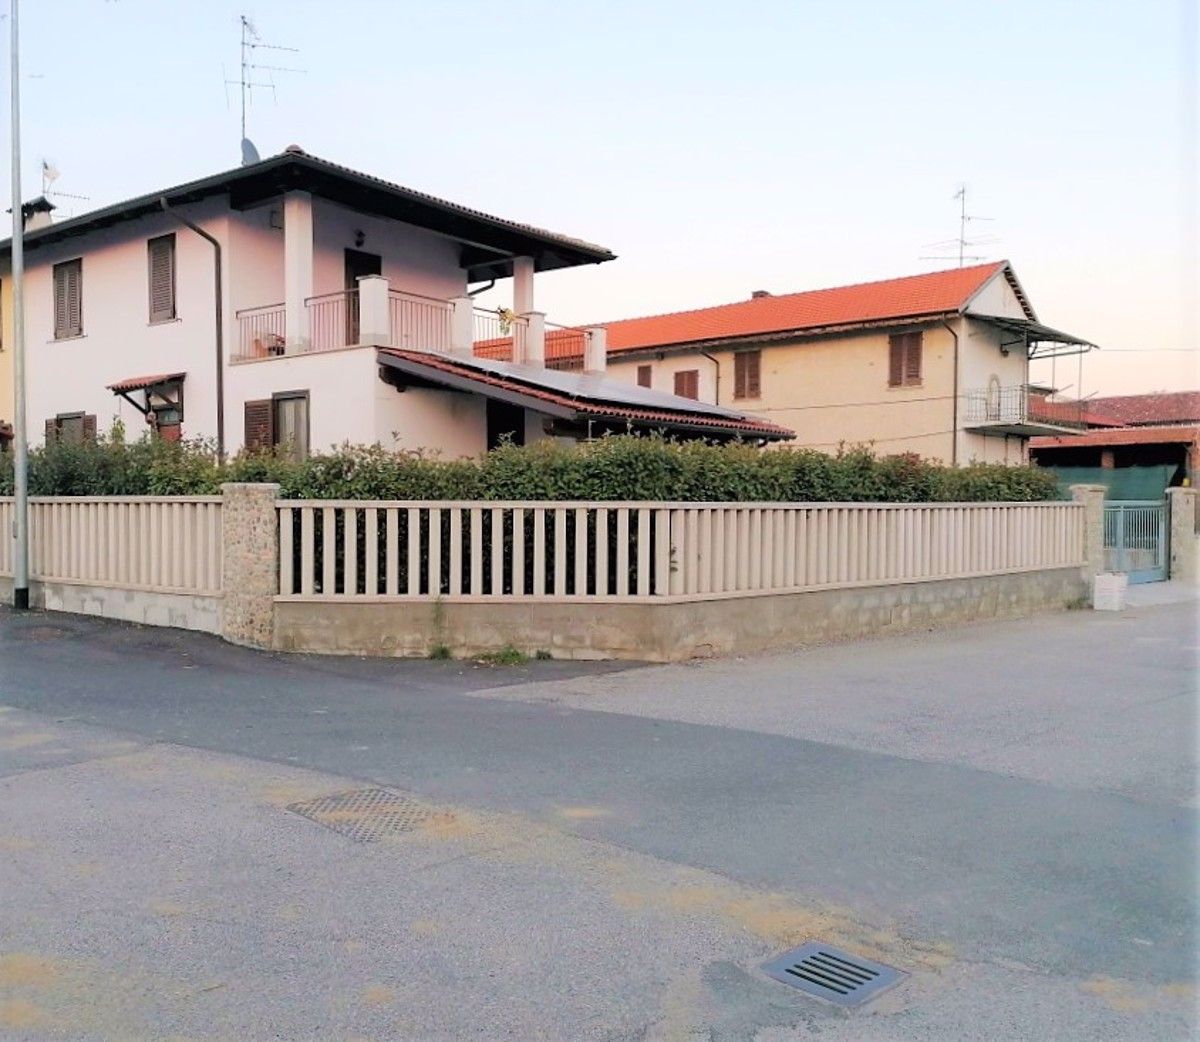 Villa in vendita a Olcenengo, 3 locali, prezzo € 162.000 | PortaleAgenzieImmobiliari.it